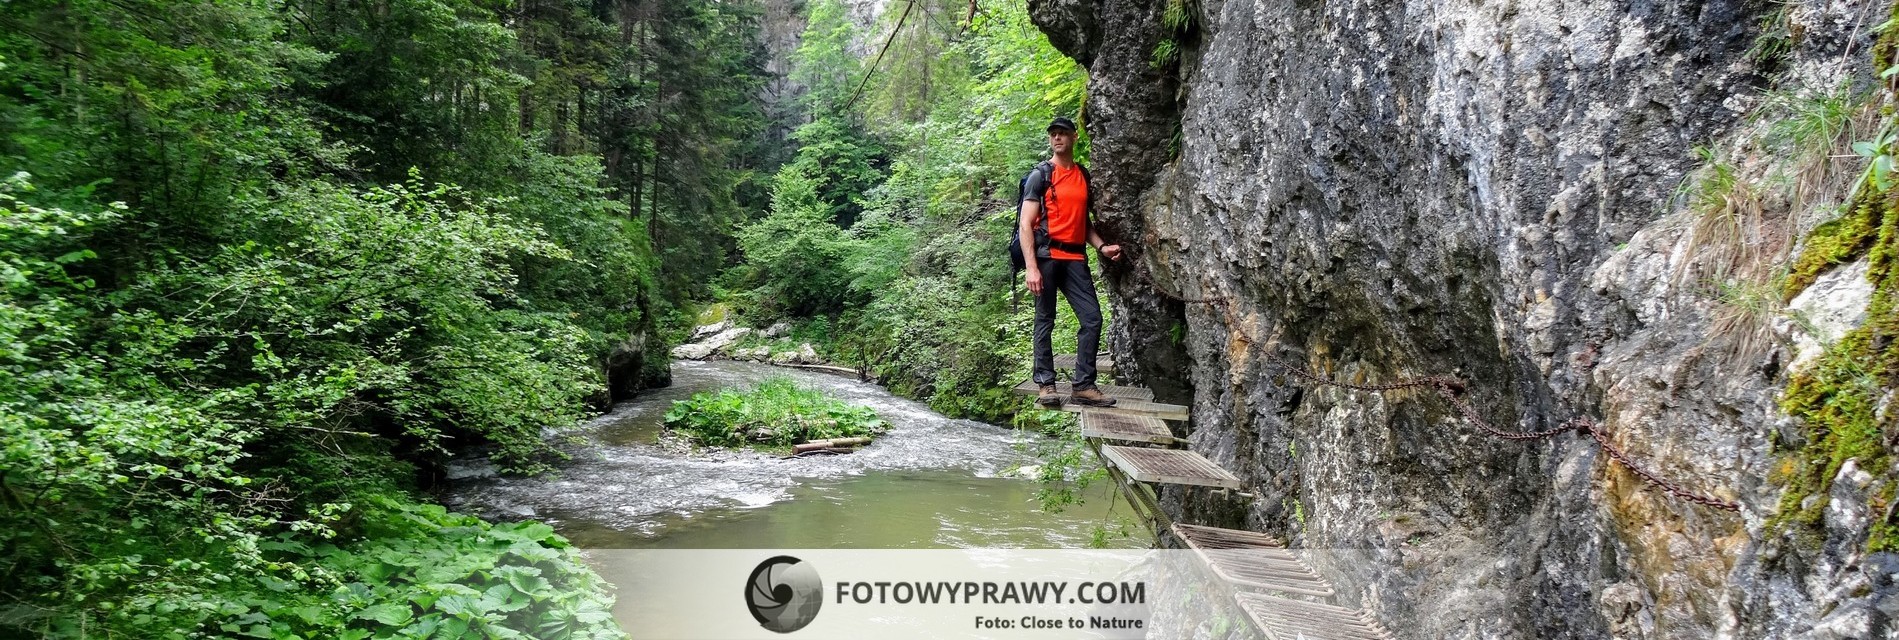 Słowacki Raj – kraina gór i strumieni